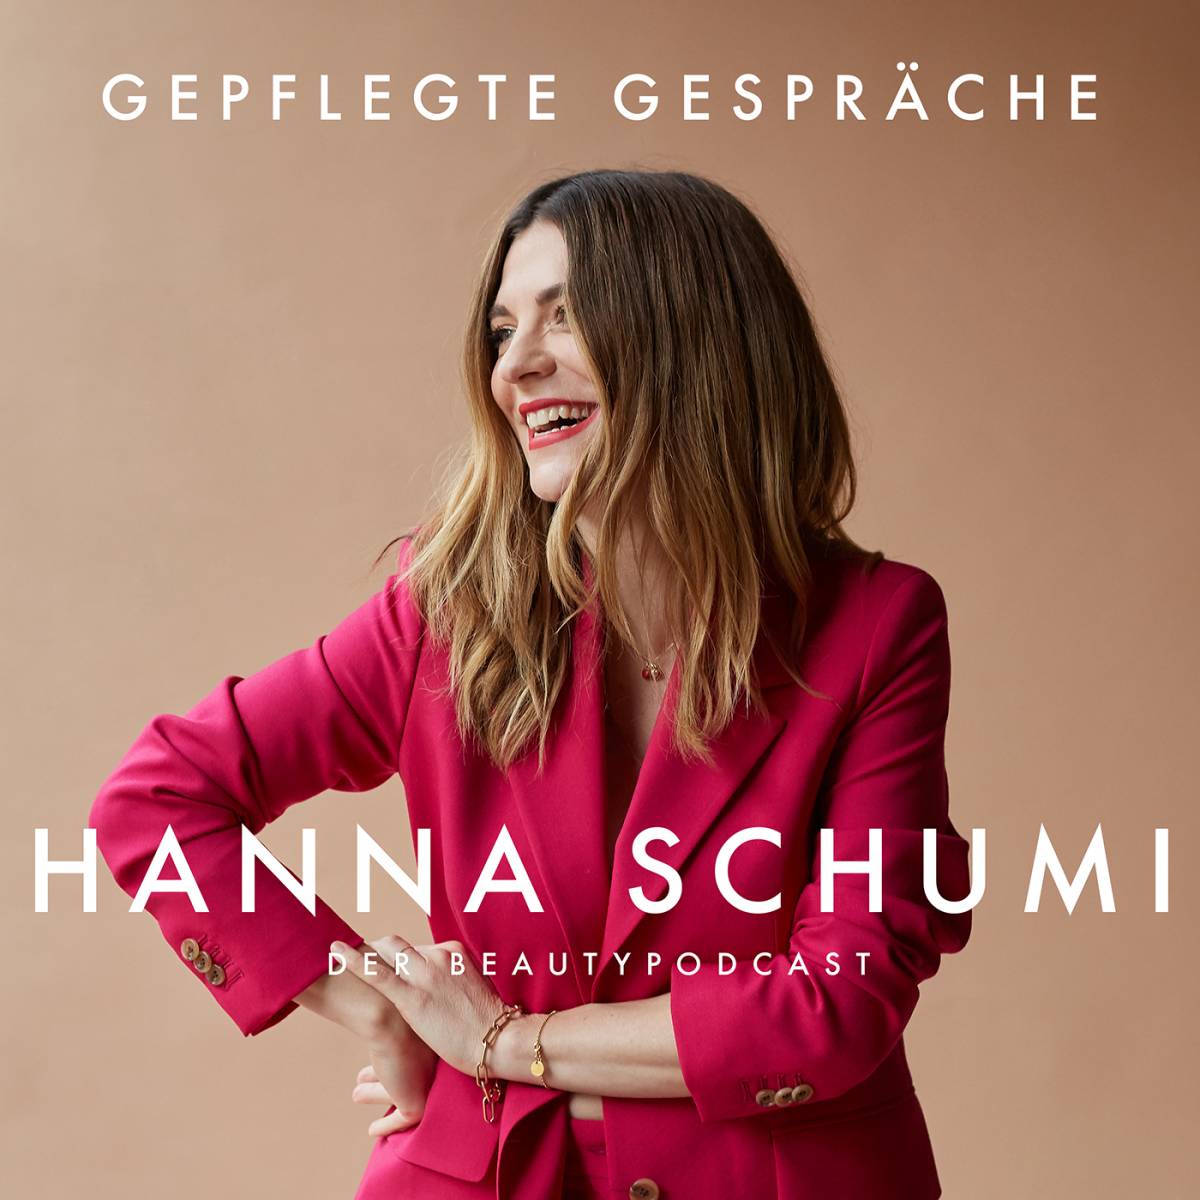 Hanna Schumi Podcast Gepflegte Gespräche